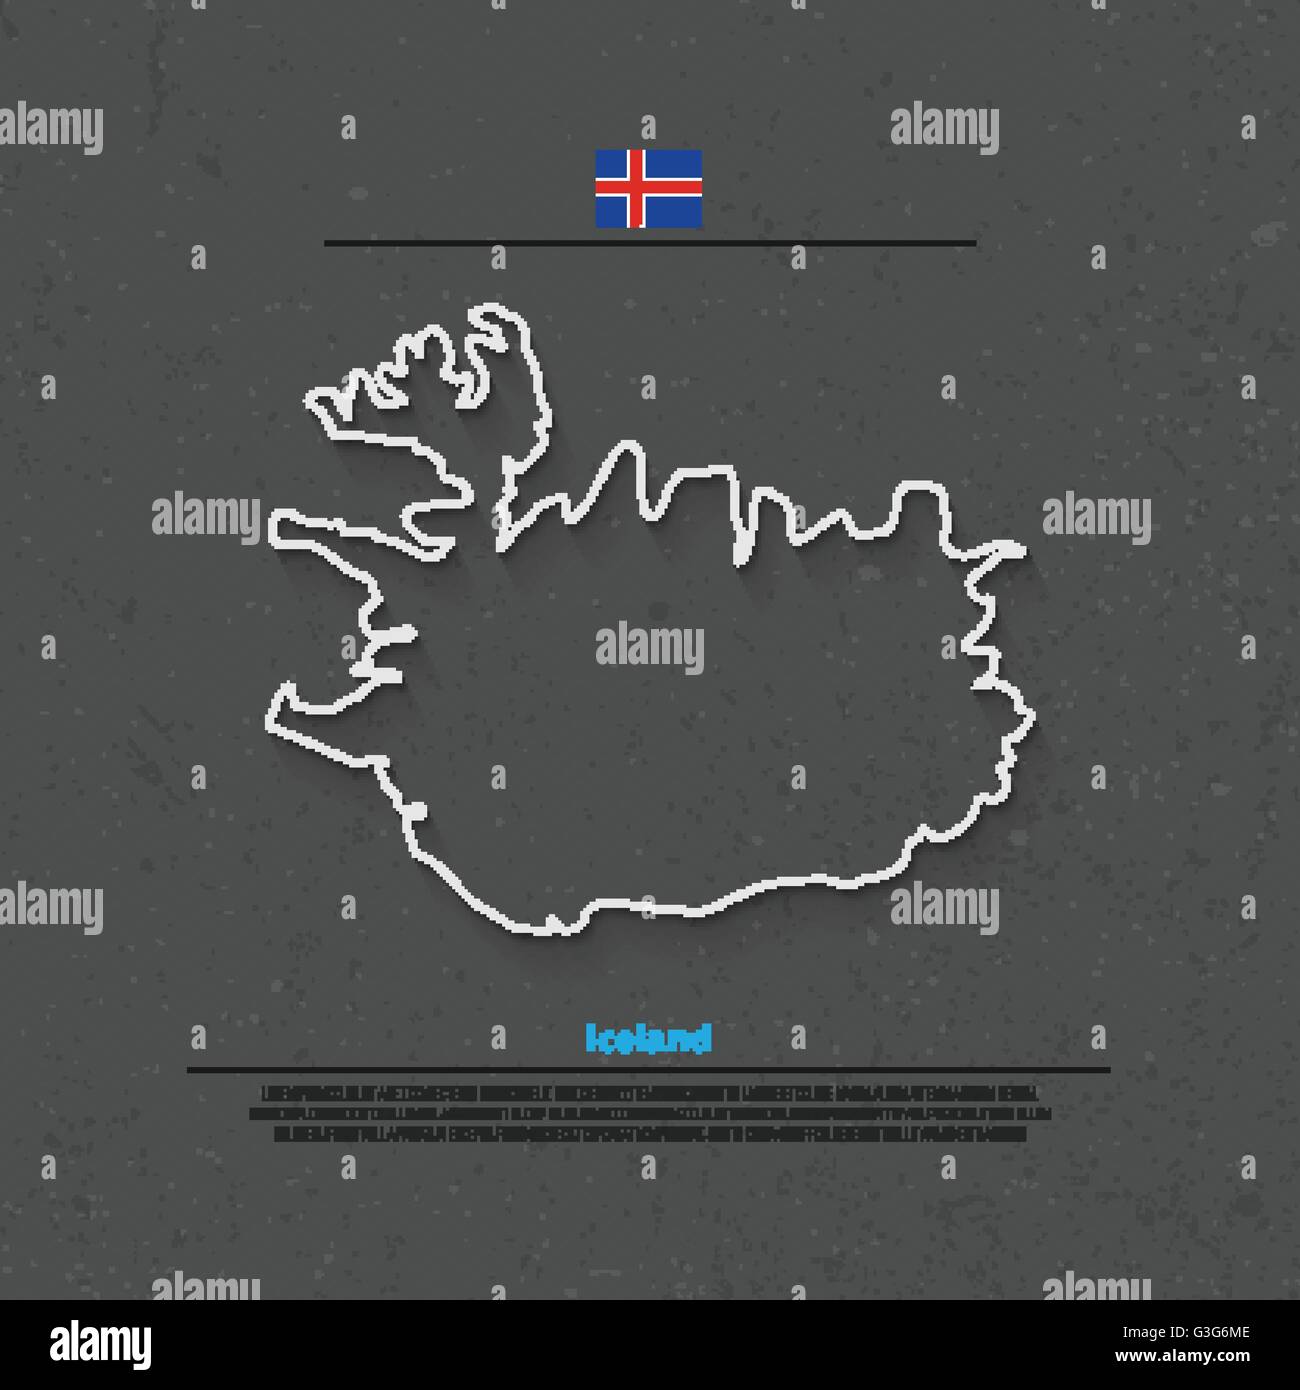 Republik Island isoliert Karte und offizielle Flaggen-Icons. Vektor-Symbol "Island politische Karte dünne Linie". Nordic Inselstaat geo Stock Vektor